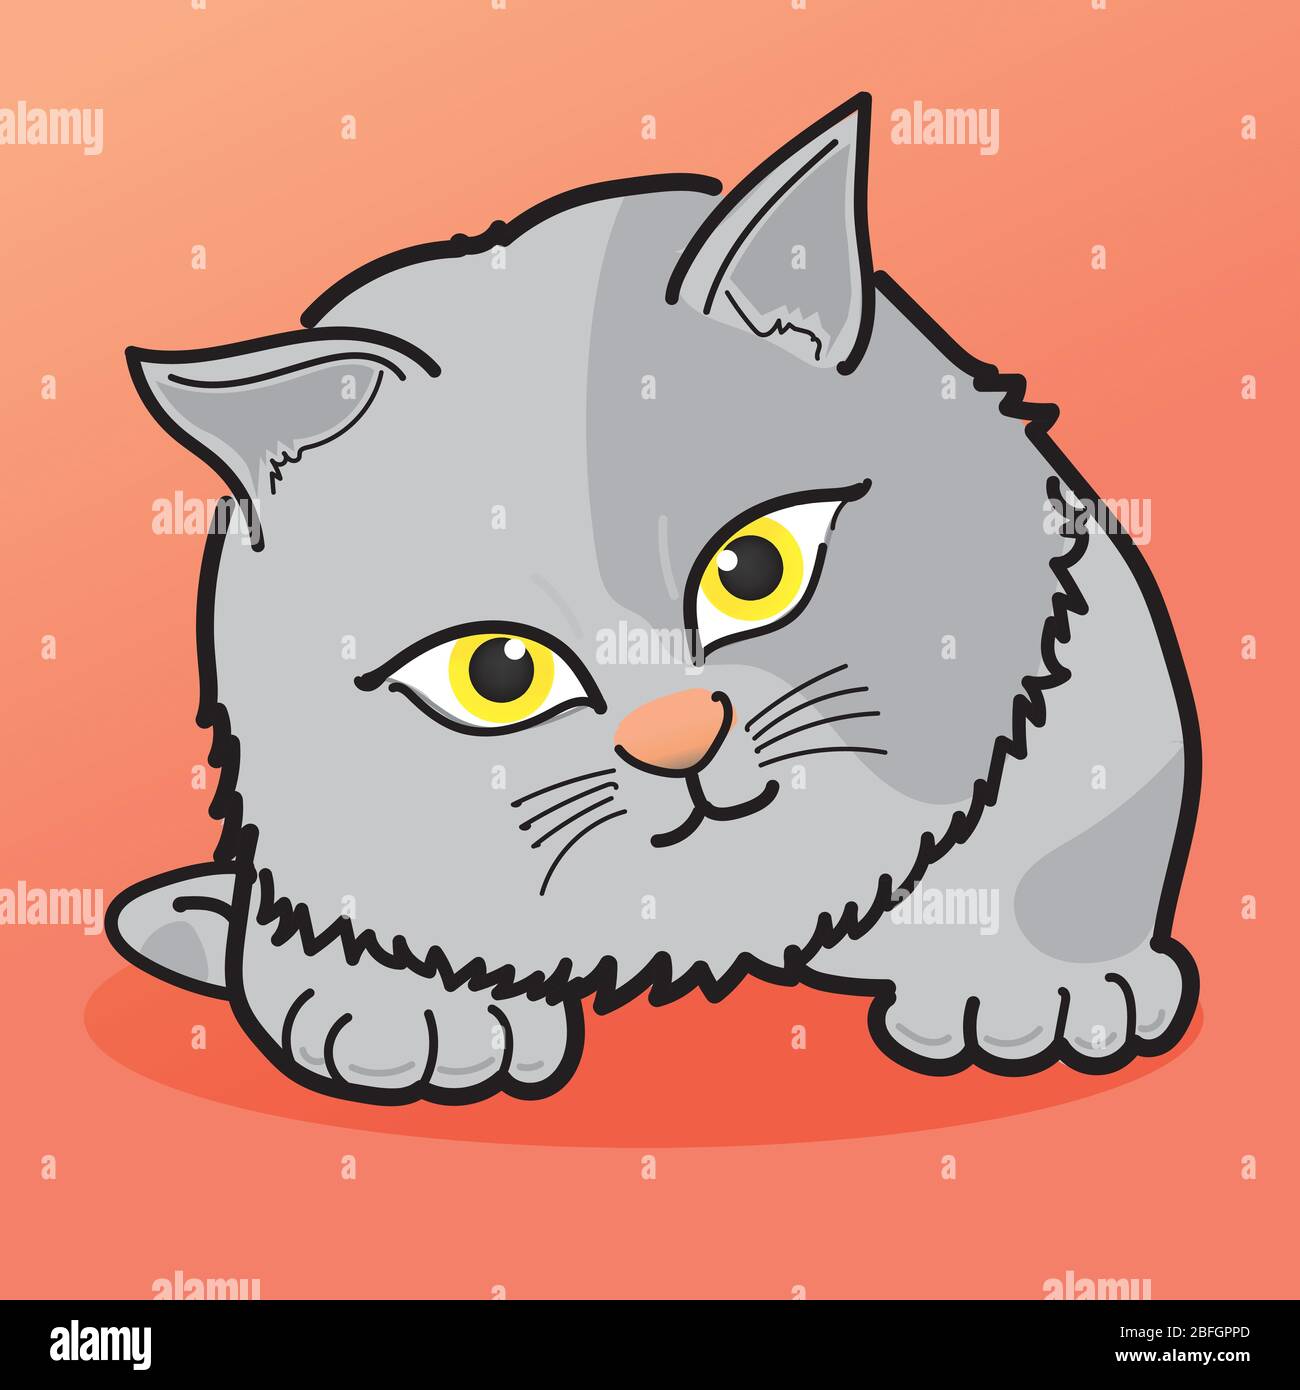 CAT Illustration Clipart. Die graue Katze hat eine dunkle Markierung auf ihrem Körper. Es hat gelbe Augen. Es ist auf einem orangefarbenen Hintergrund. Hand zeichnen Kunst Stock Vektor